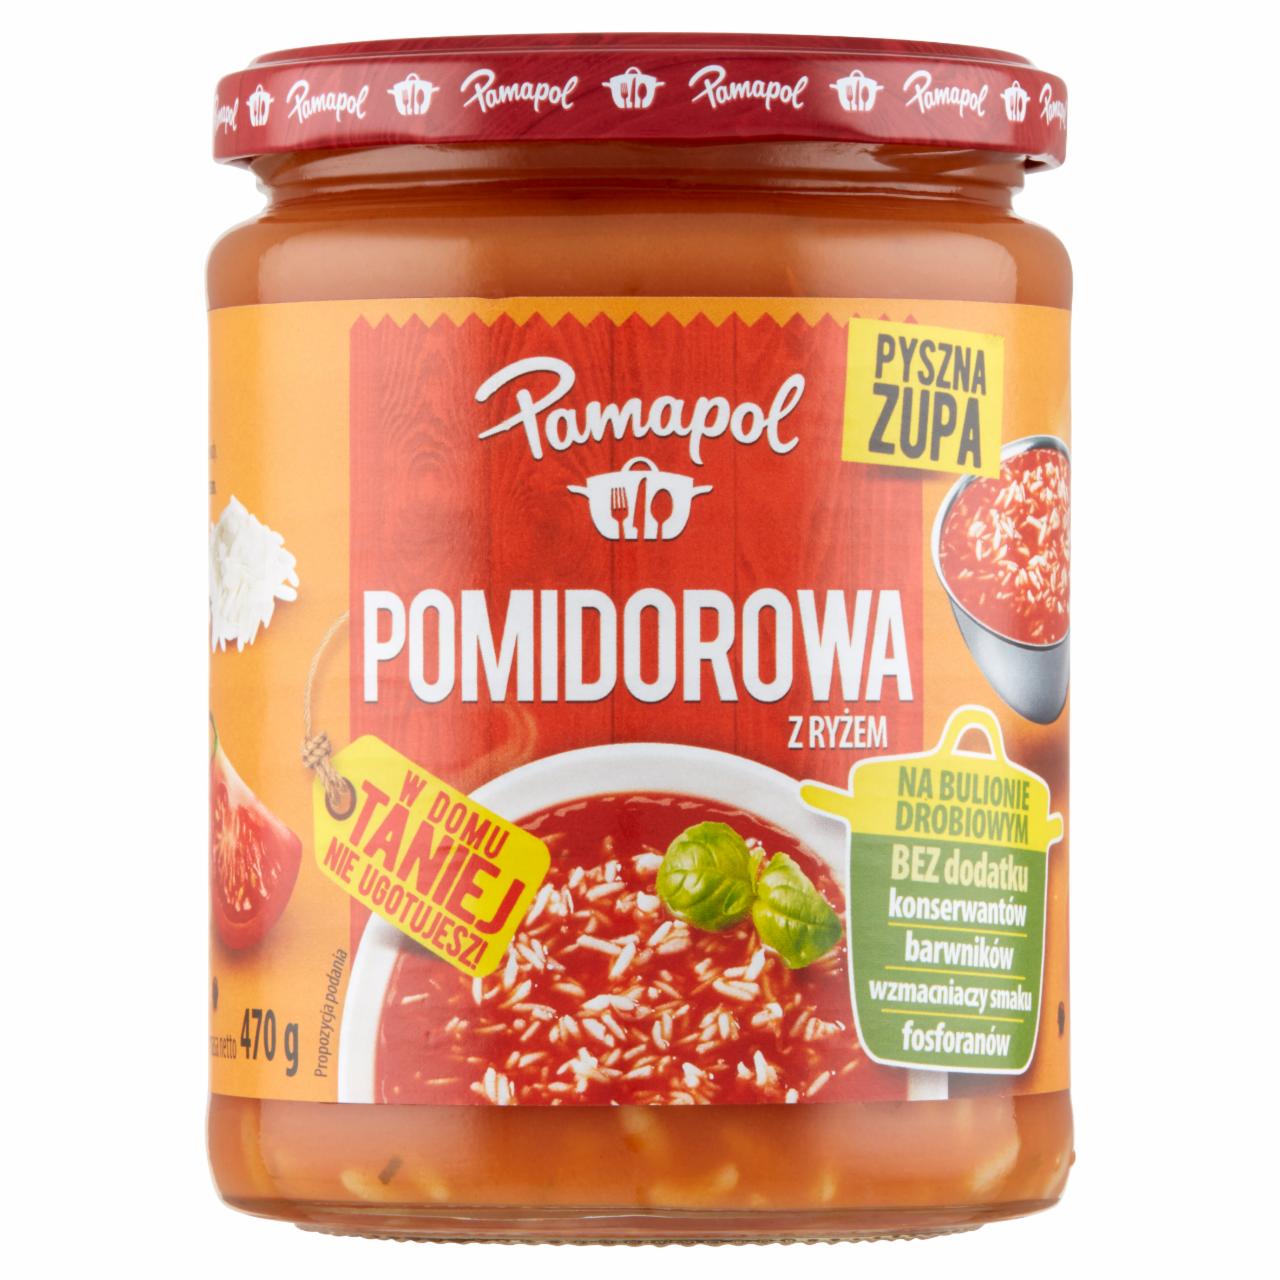 Zdjęcia - Pamapol Pomidorowa z ryżem 470 g